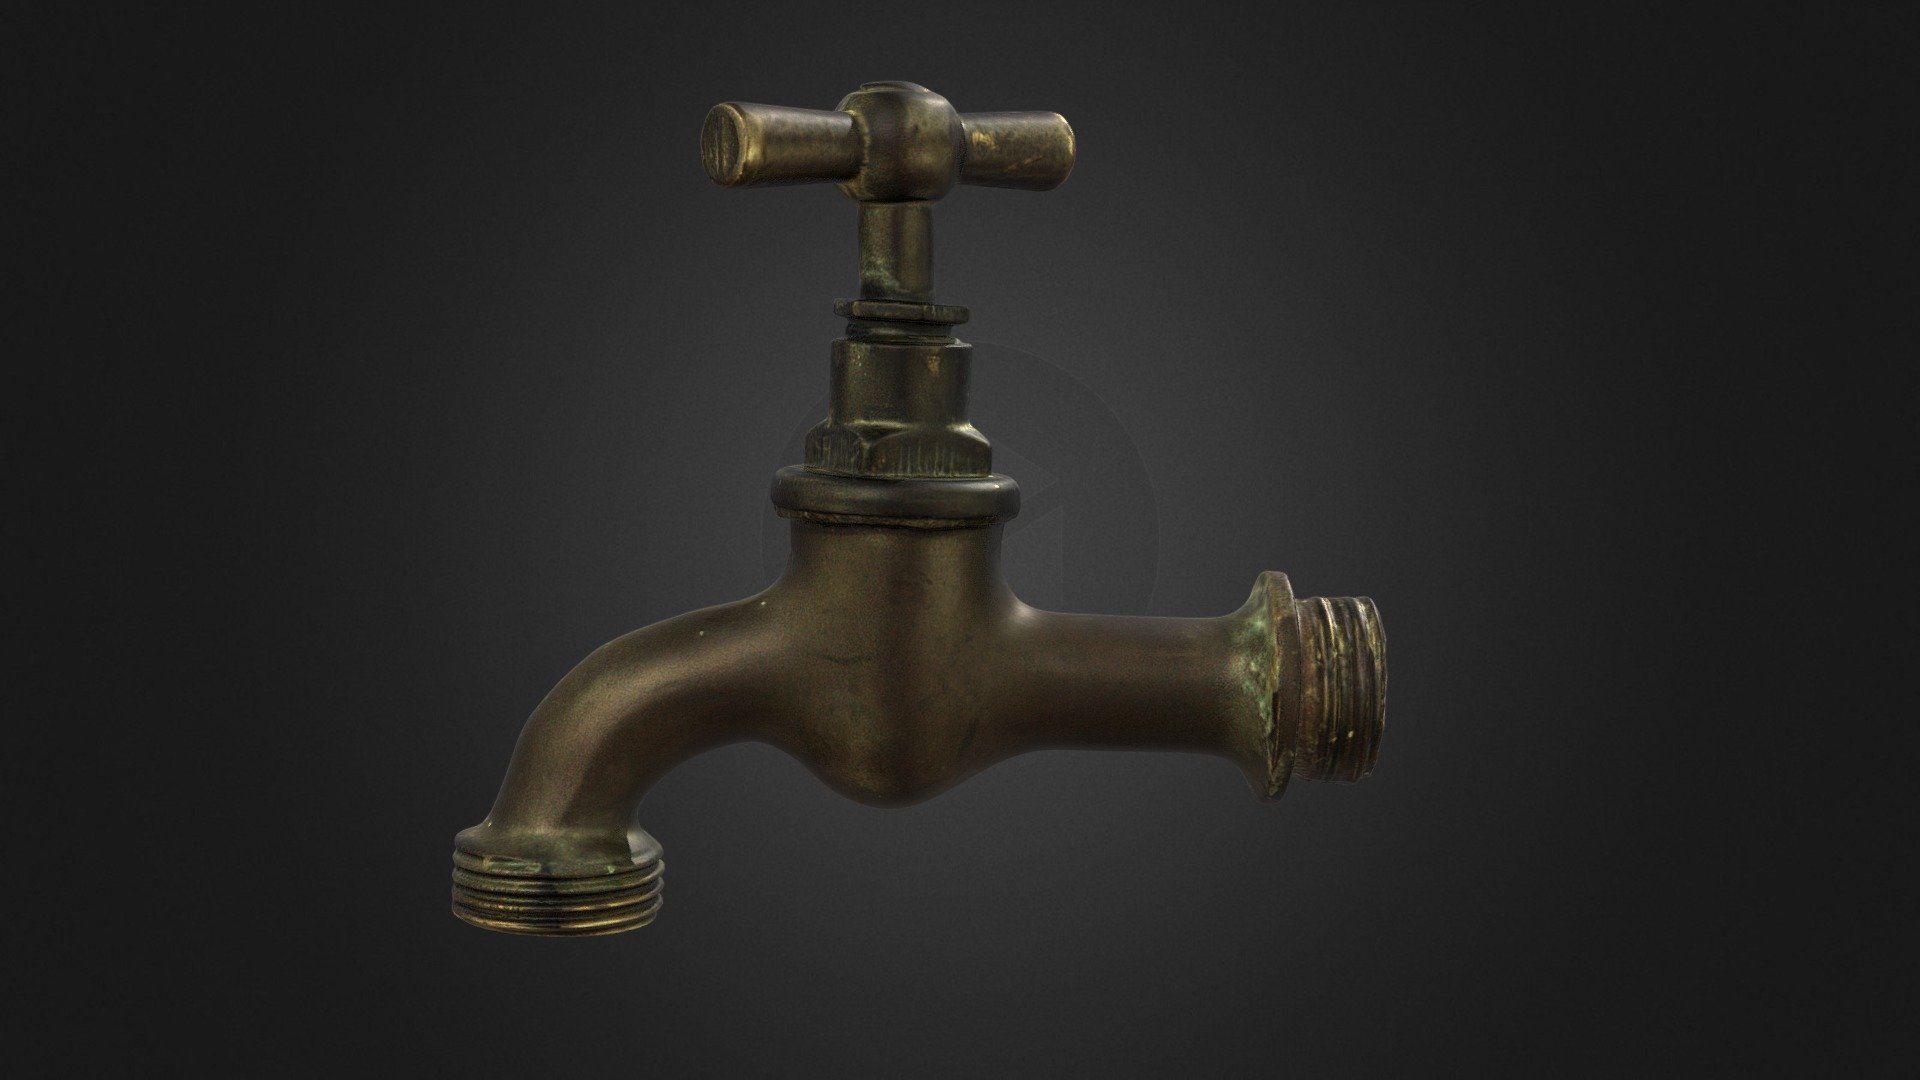 3D Faucet Models ~ Download a Faucet 3D Model | Pond5